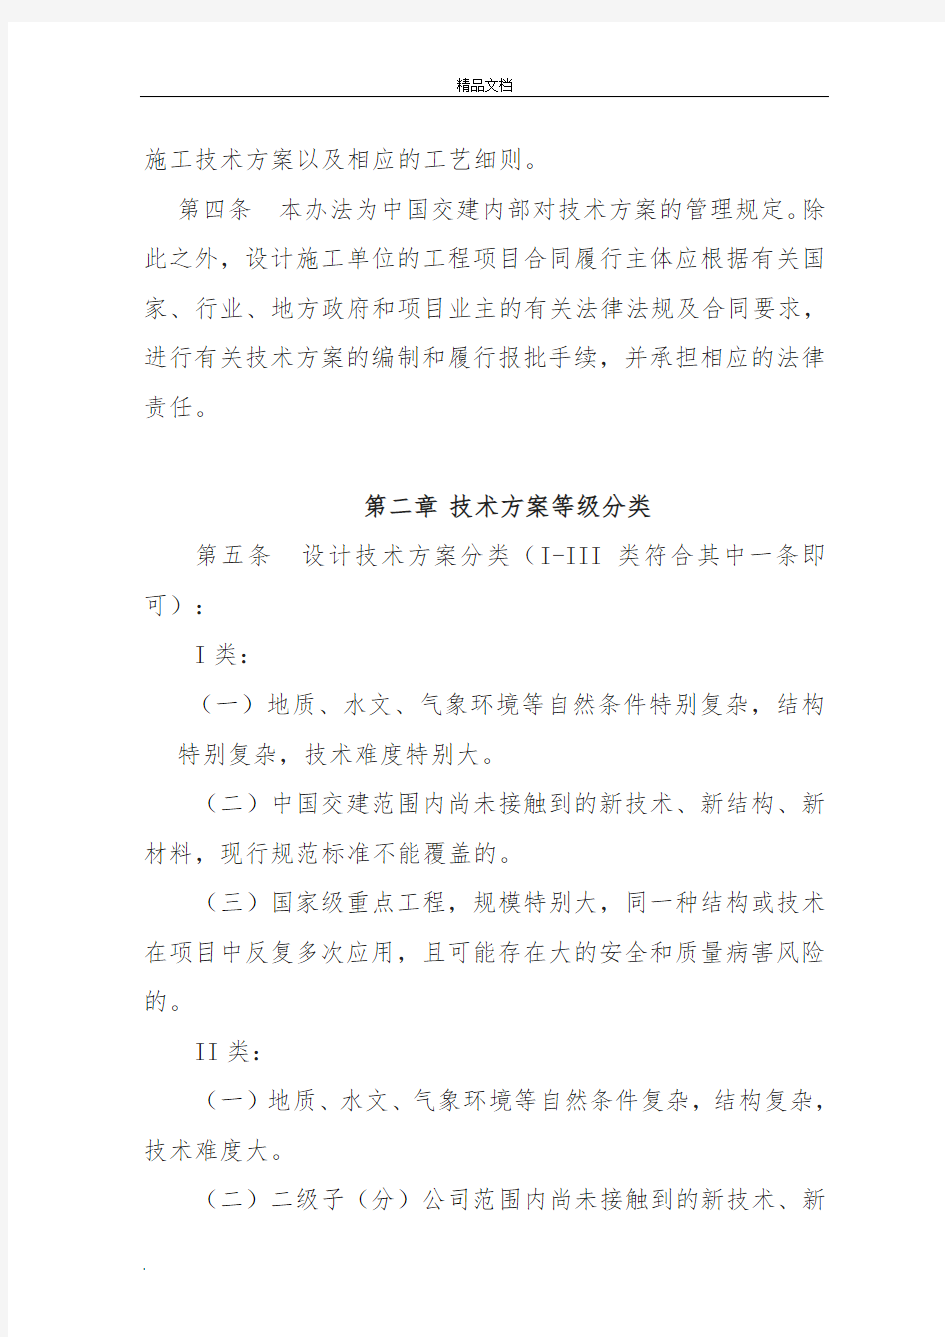 中国交通建设股份有限公司工程技术方案管理办法(试行)